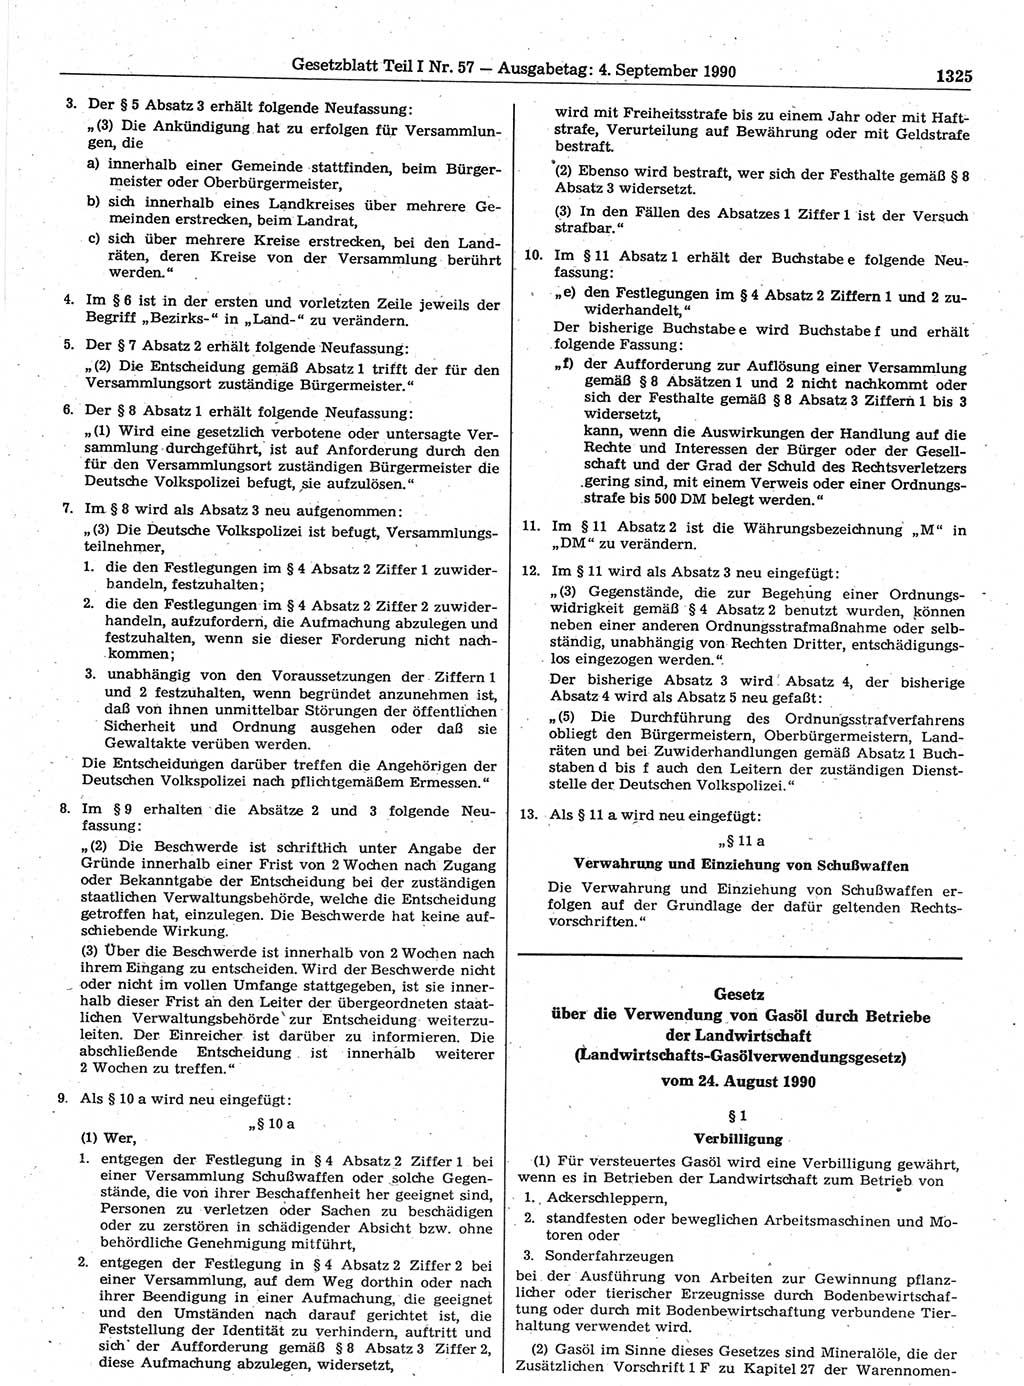 Gesetzblatt (GBl.) der Deutschen Demokratischen Republik (DDR) Teil Ⅰ 1990, Seite 1325 (GBl. DDR Ⅰ 1990, S. 1325)